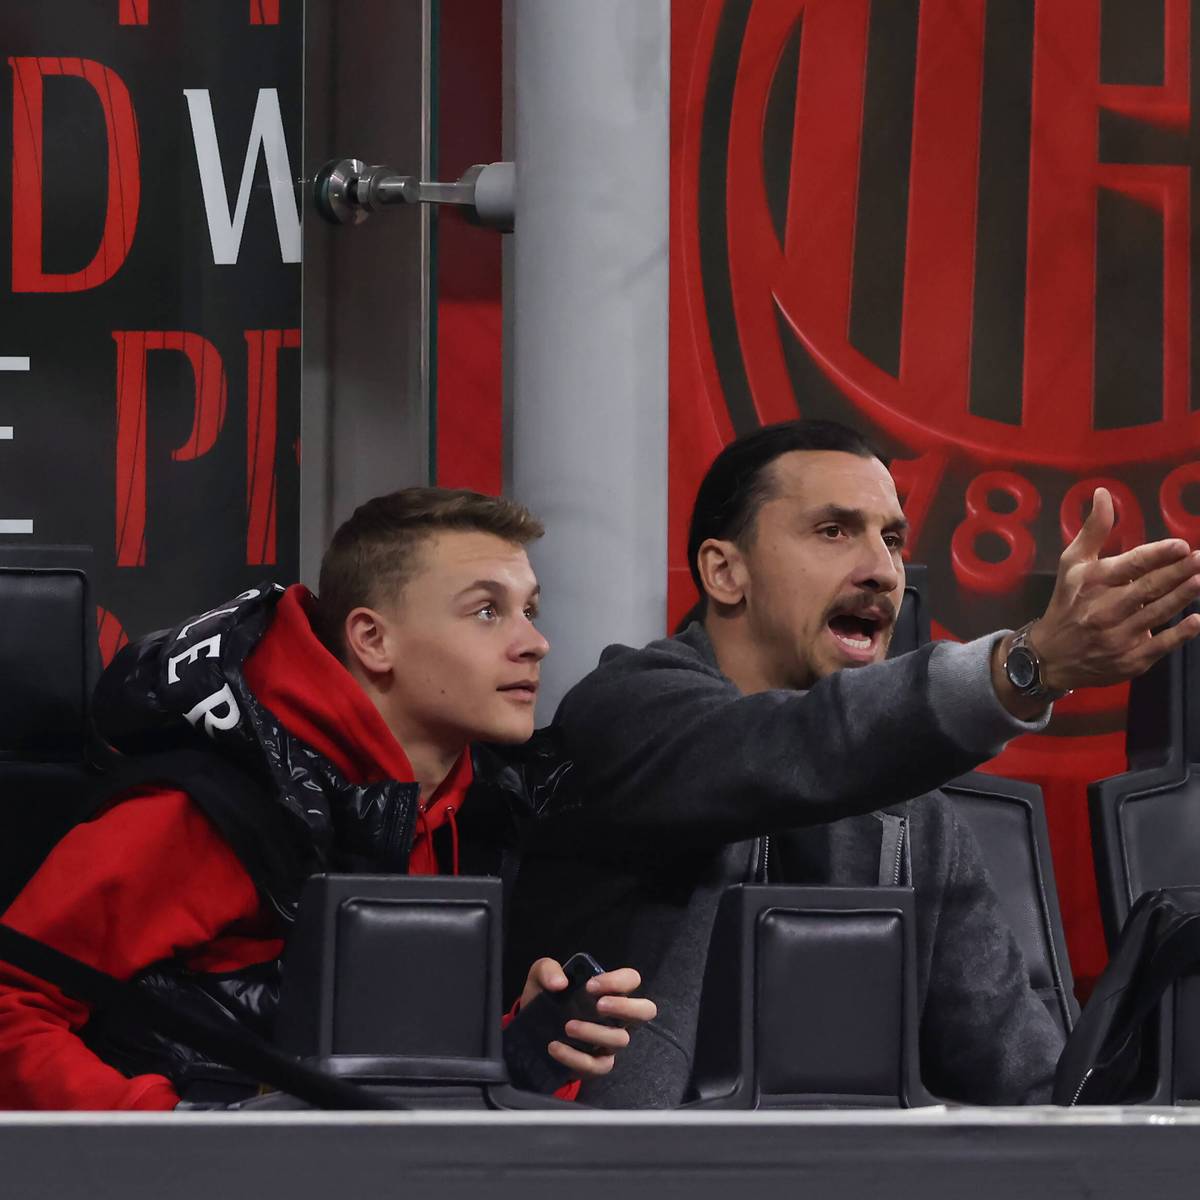 Die Söhne von Zlatan Ibrahimovic legen offenbar auch beim AC Mailand los. Es könnte auch ein Hinweis auf die persönliche Zukunft des Superstars sein.